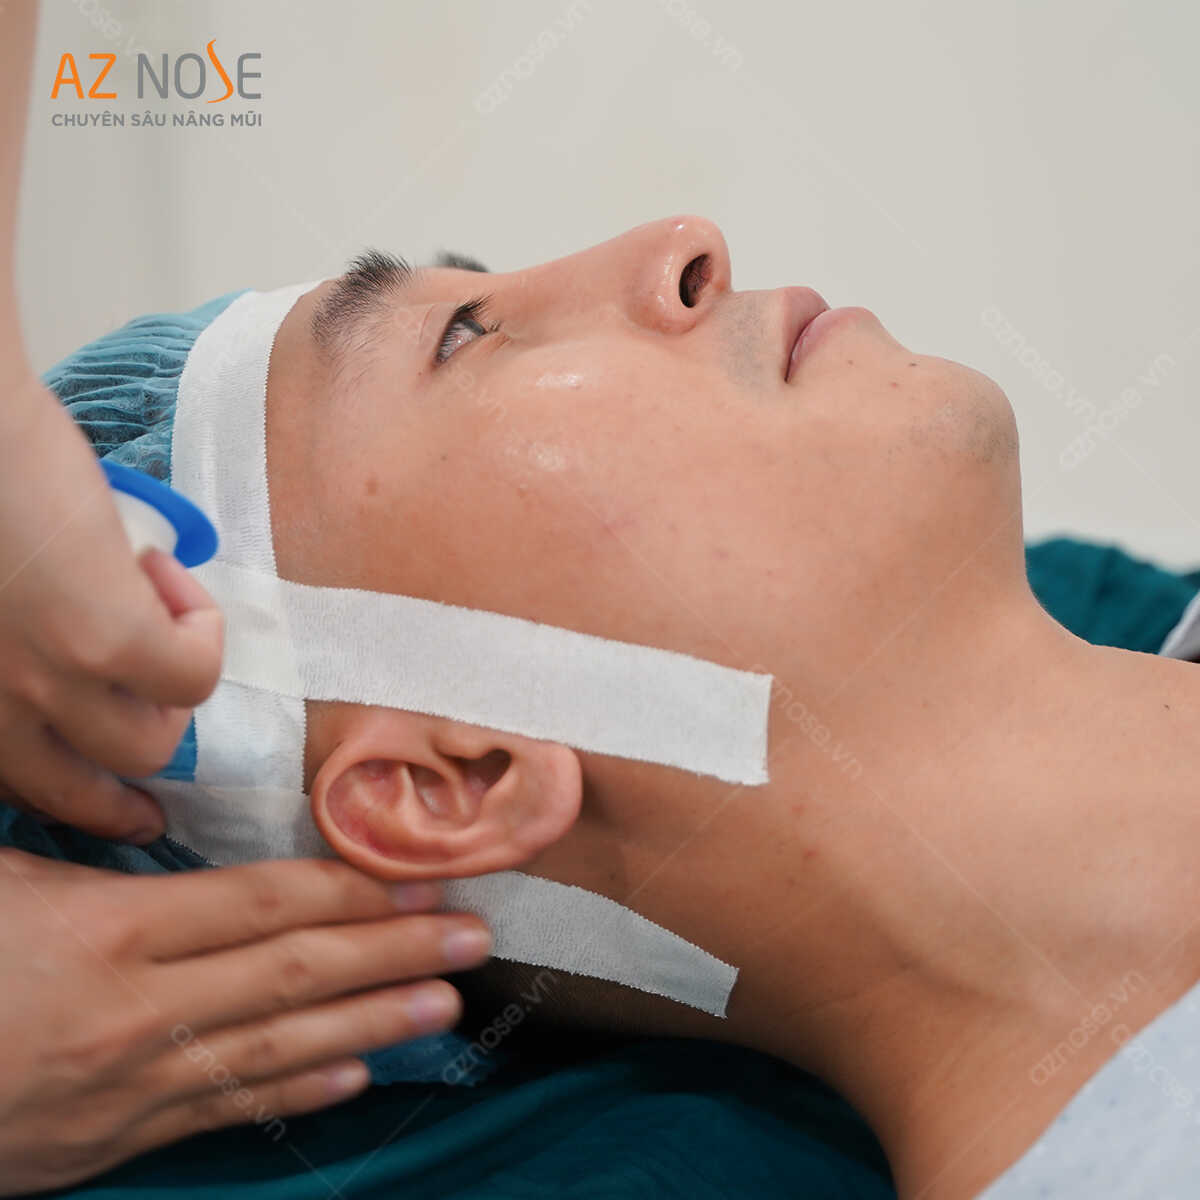 Điều dưỡng của phòng khám chuyên sâu nâng mũi AZ NOSE chuẩn bị trước ca phẫu thuật